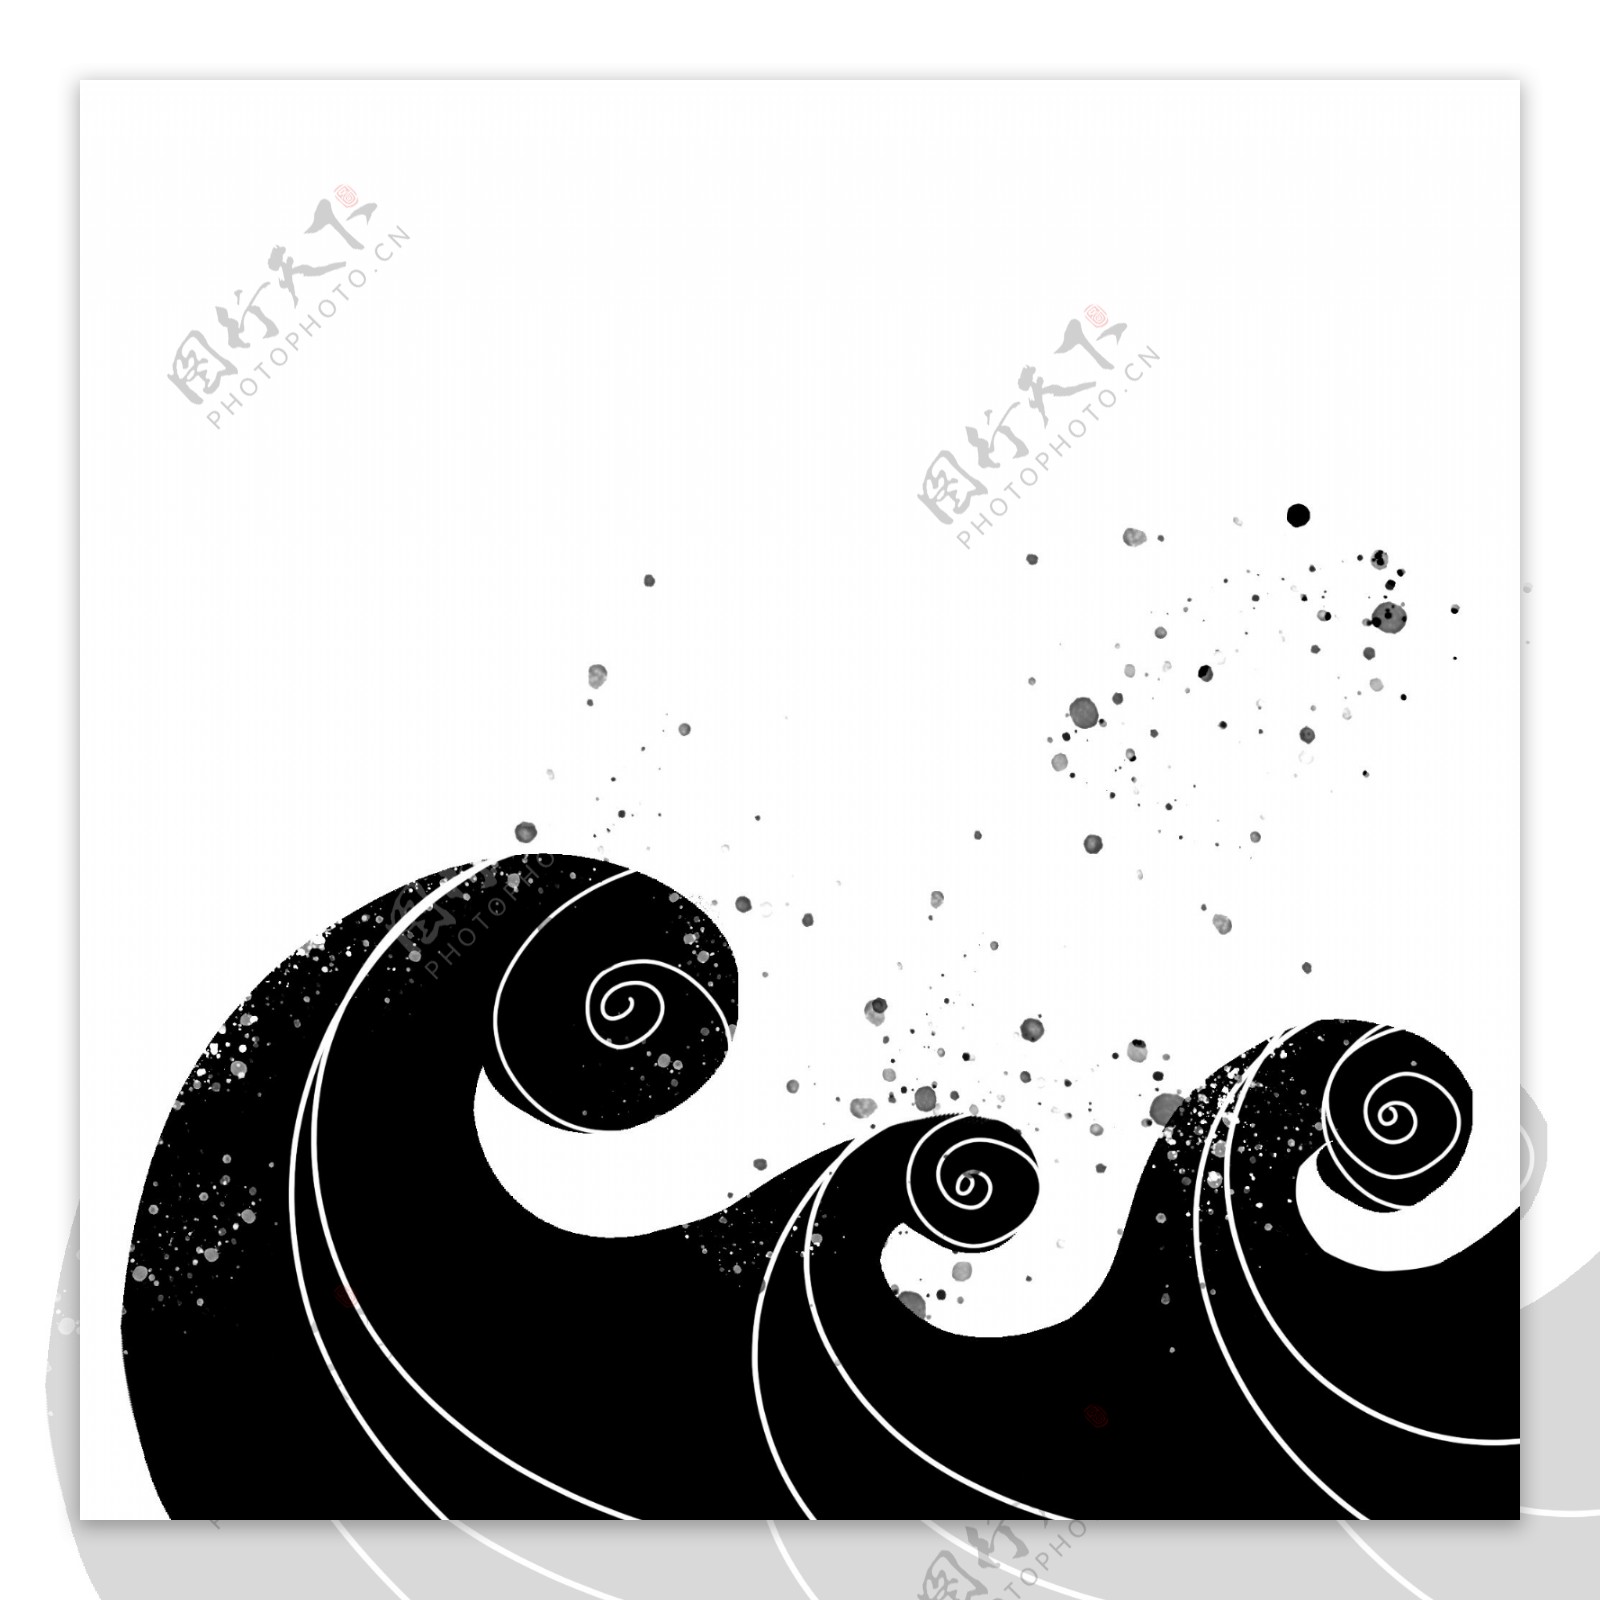 黑色手绘通用波浪装饰